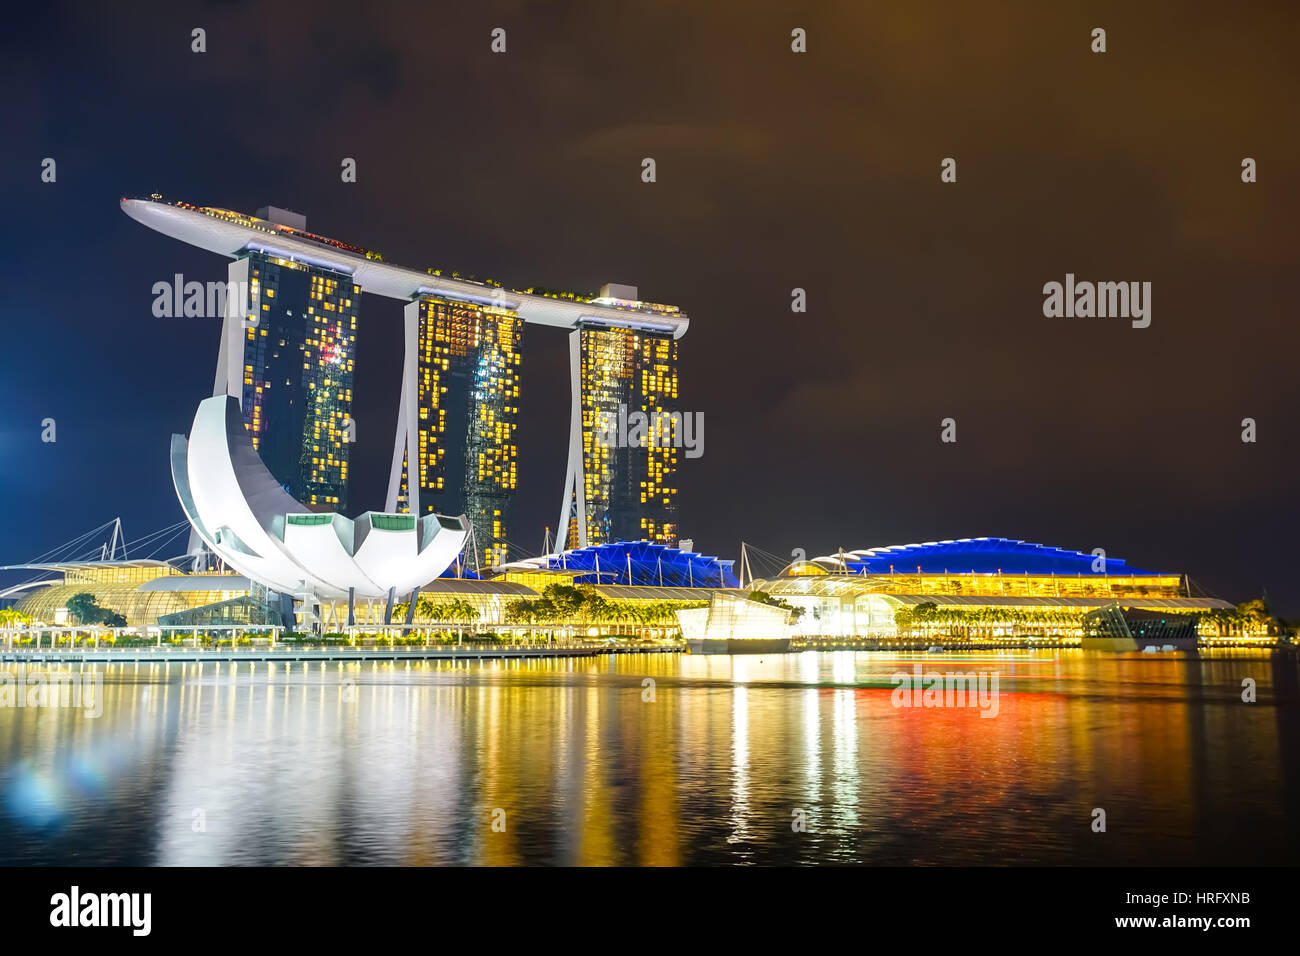 MARINA BAY, SINGAPOUR - Jan 20, 2017 : Paysage de la Marina Bay Sands à Singapour. Banque D'Images